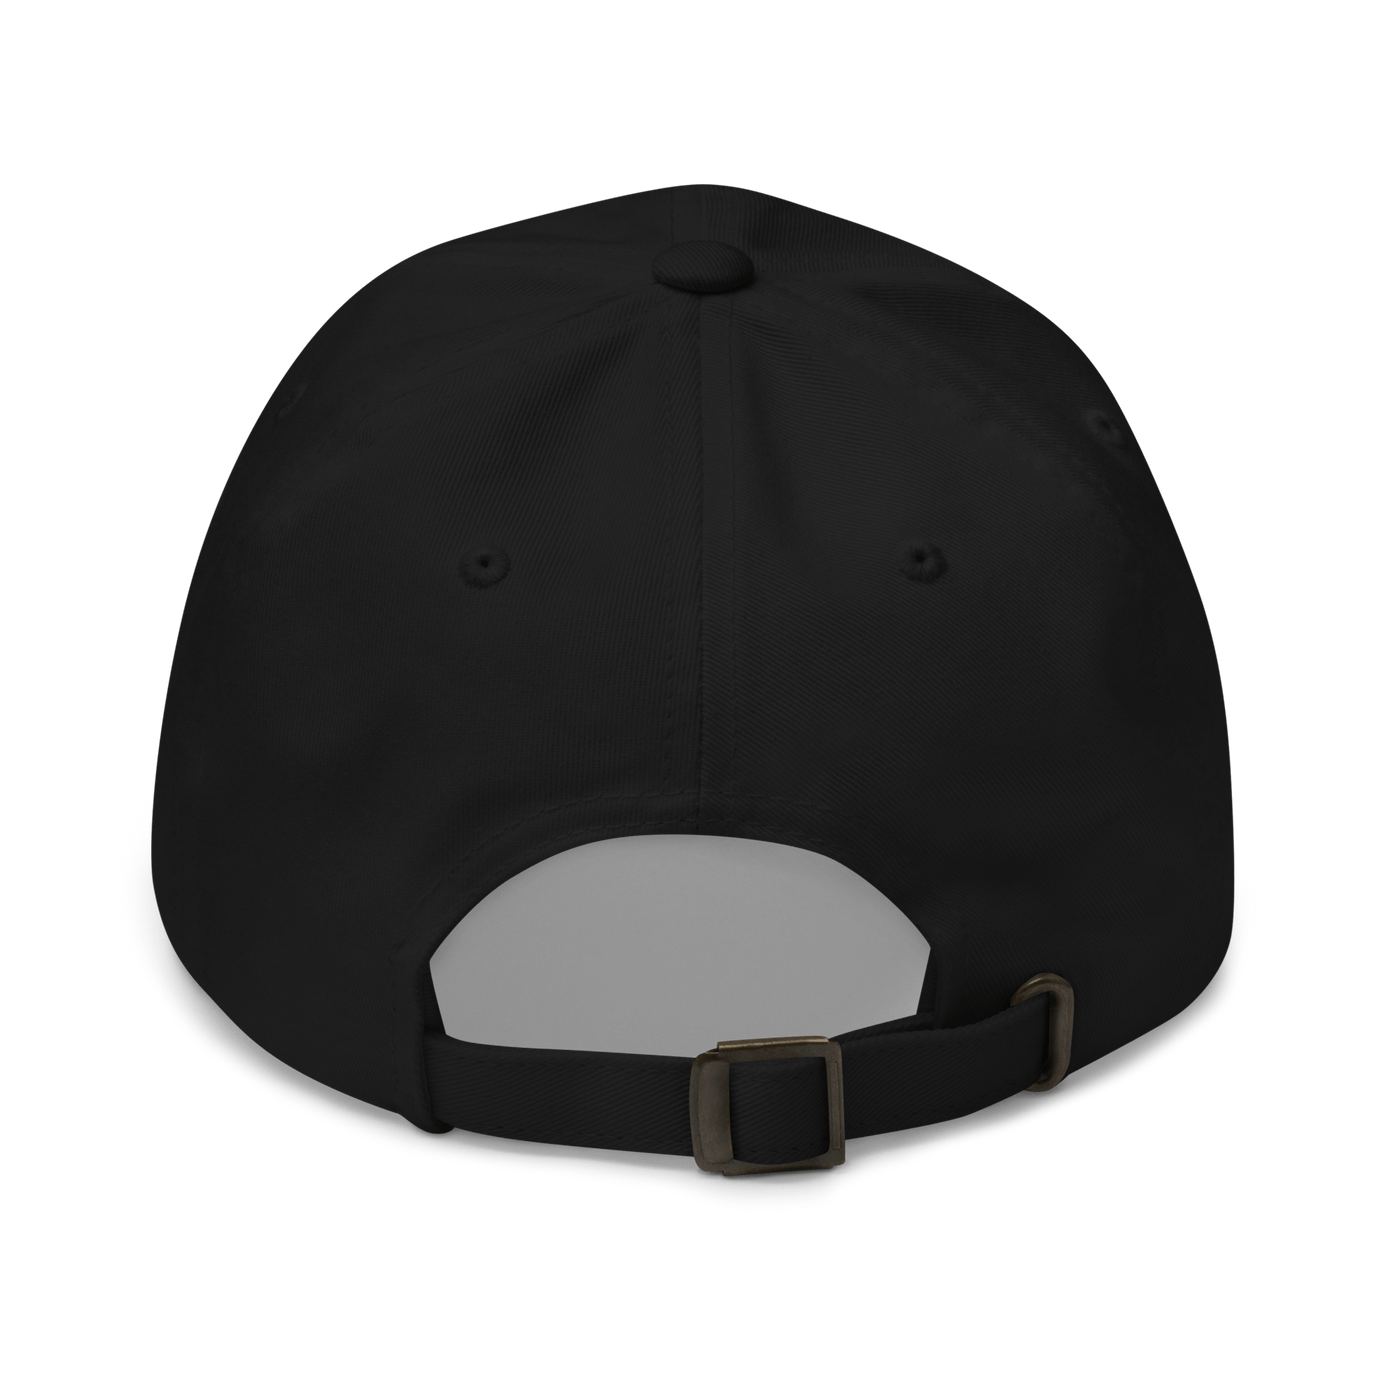 EI SAA PEITTÄÄ - Dad hat - Black - - Just Another Cap Store